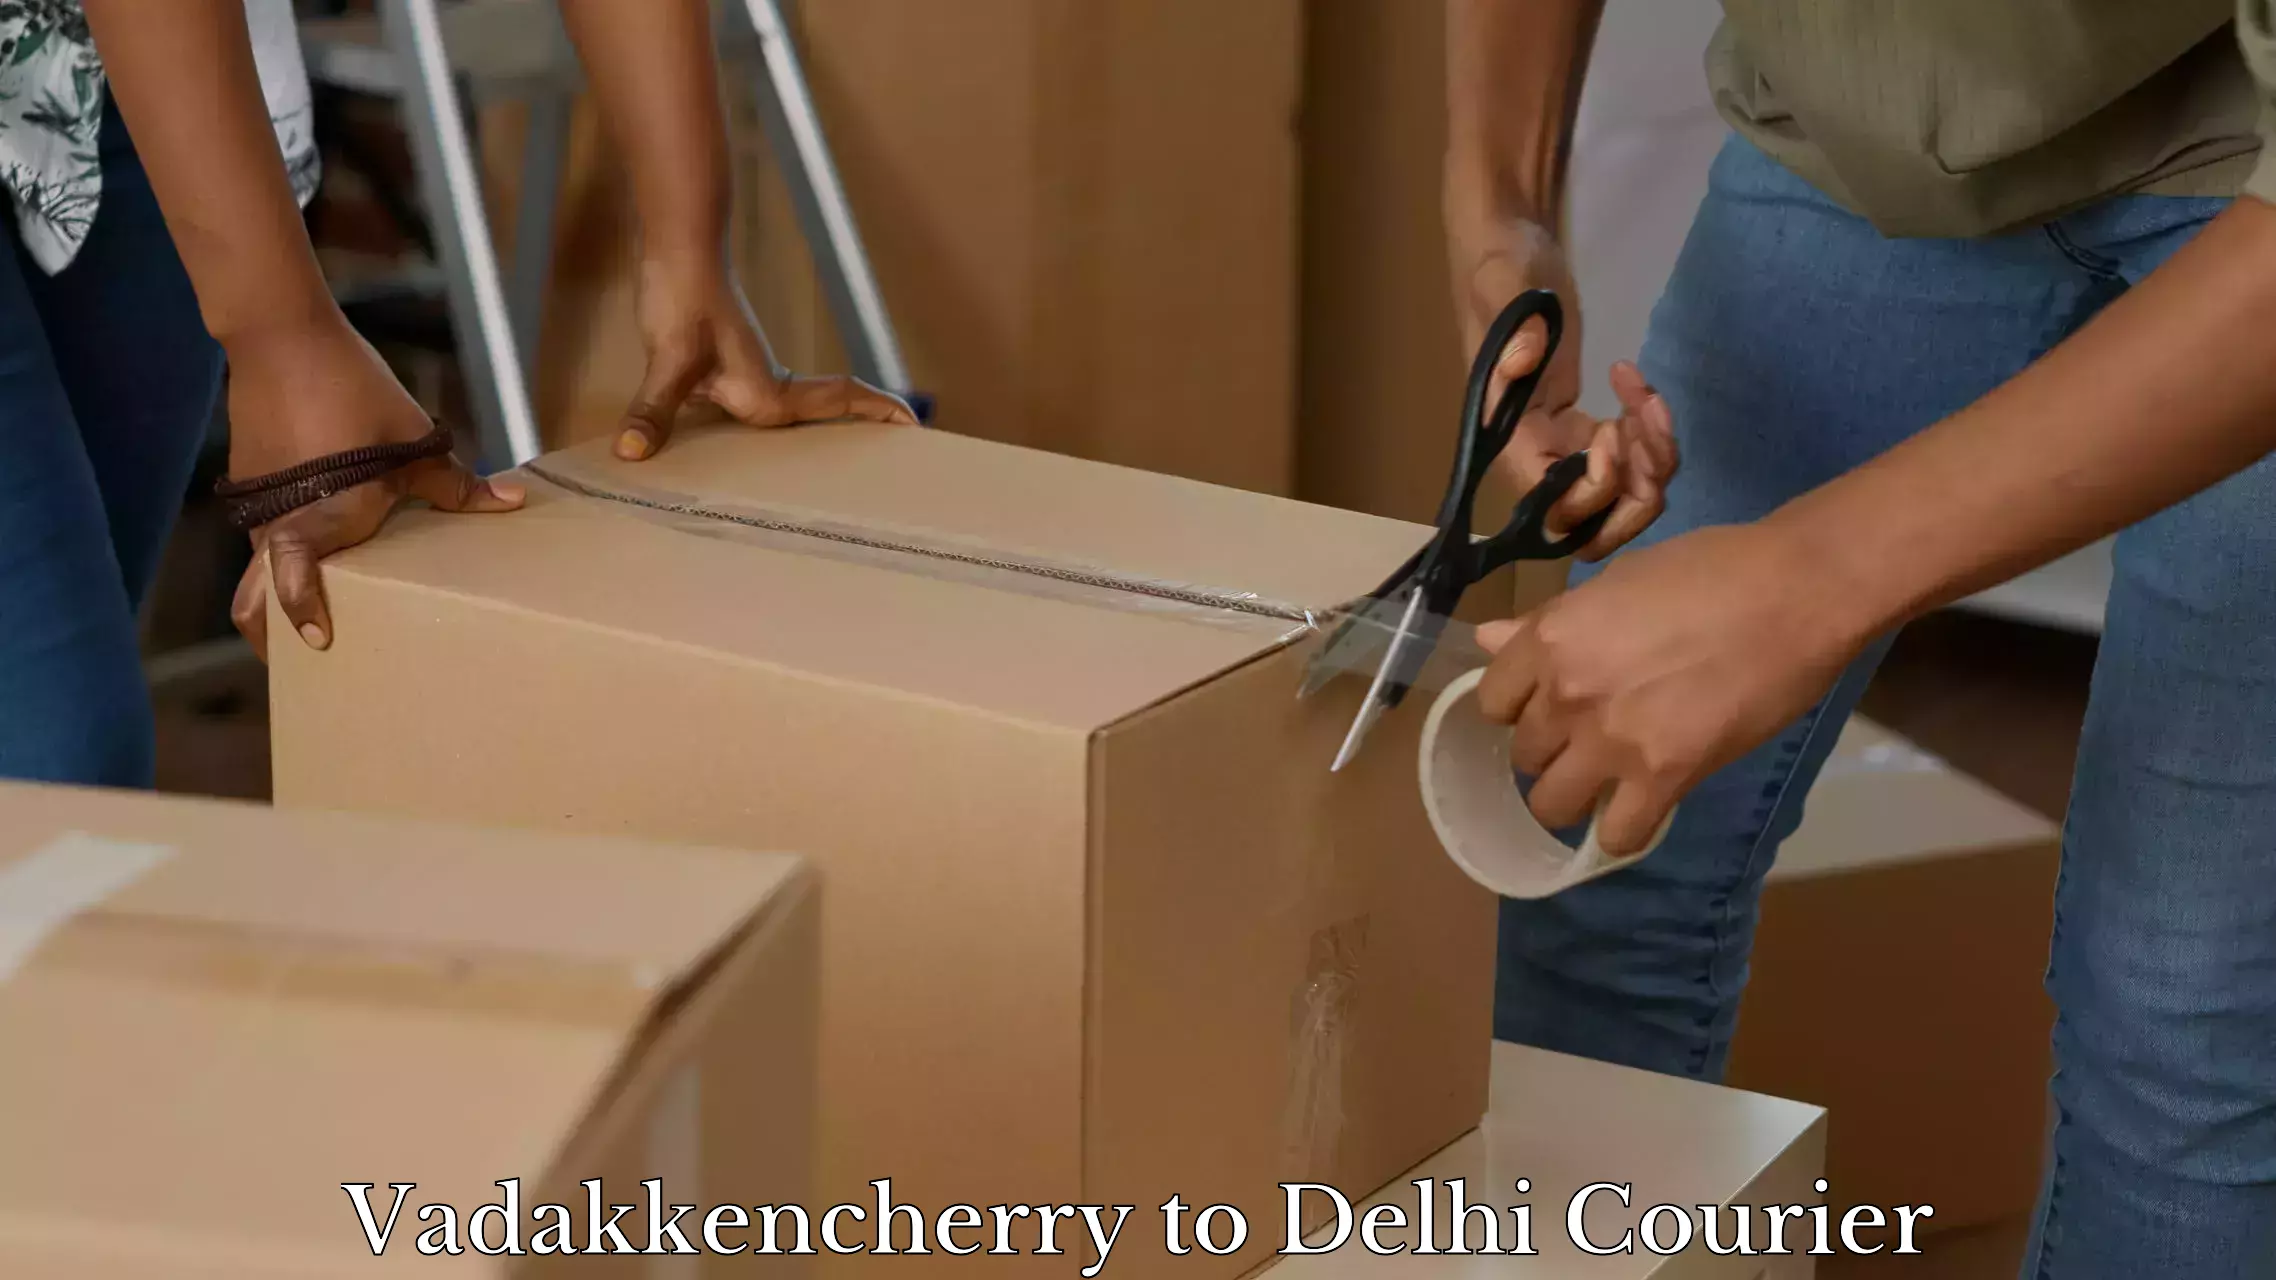 Luggage shipment specialists Vadakkencherry to University of Delhi